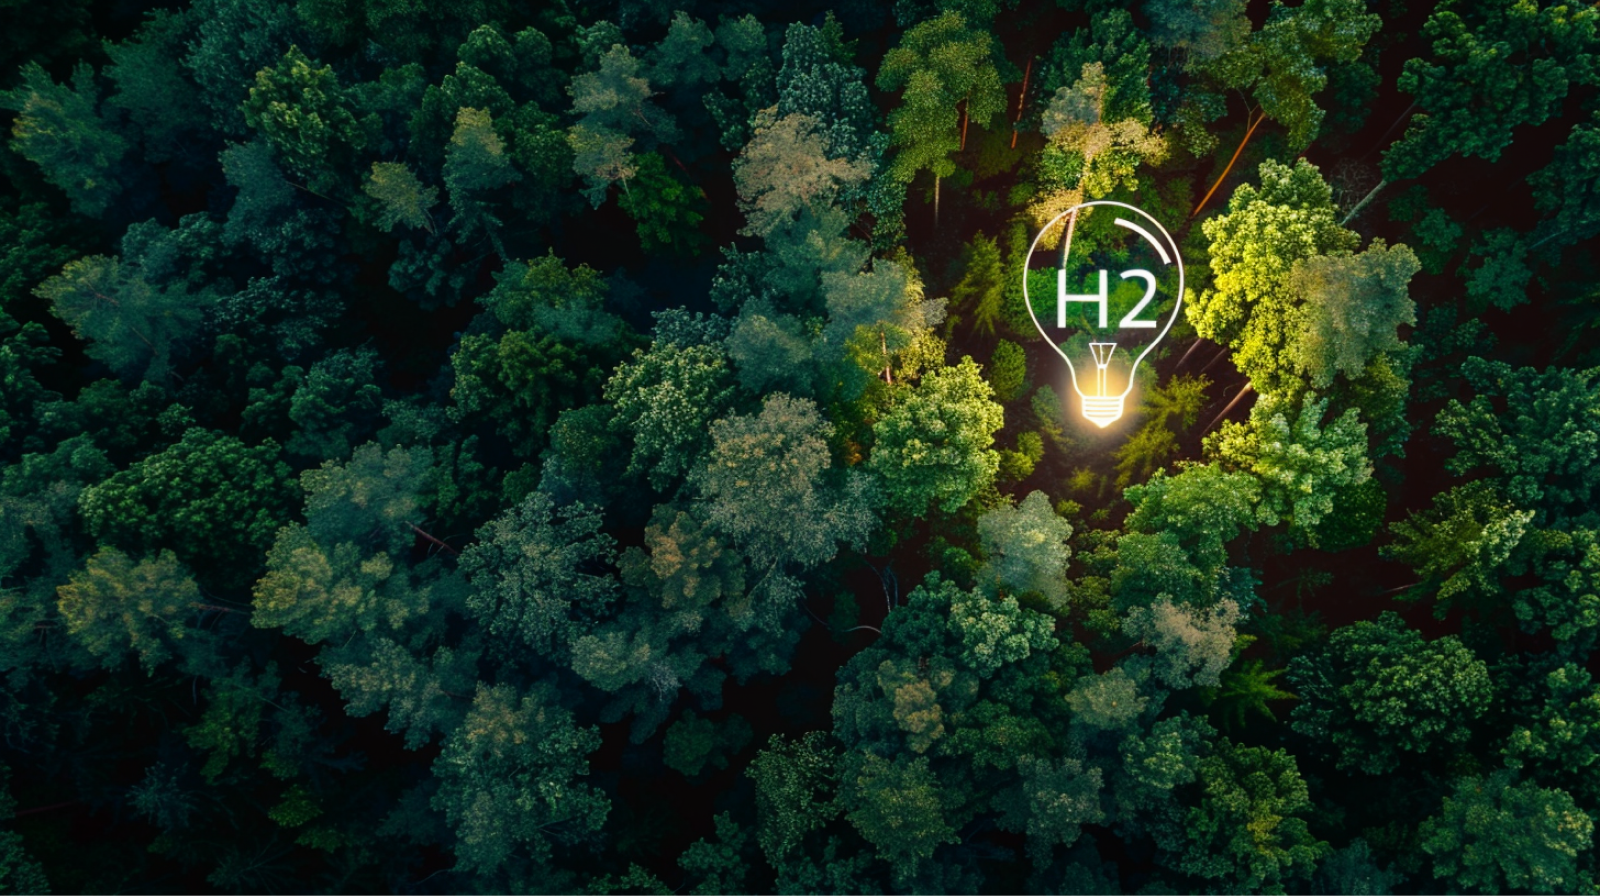 eine Luftaufnahme eines Waldes mit einer glühbirnenförmigen Lichtung, markiert mit H2